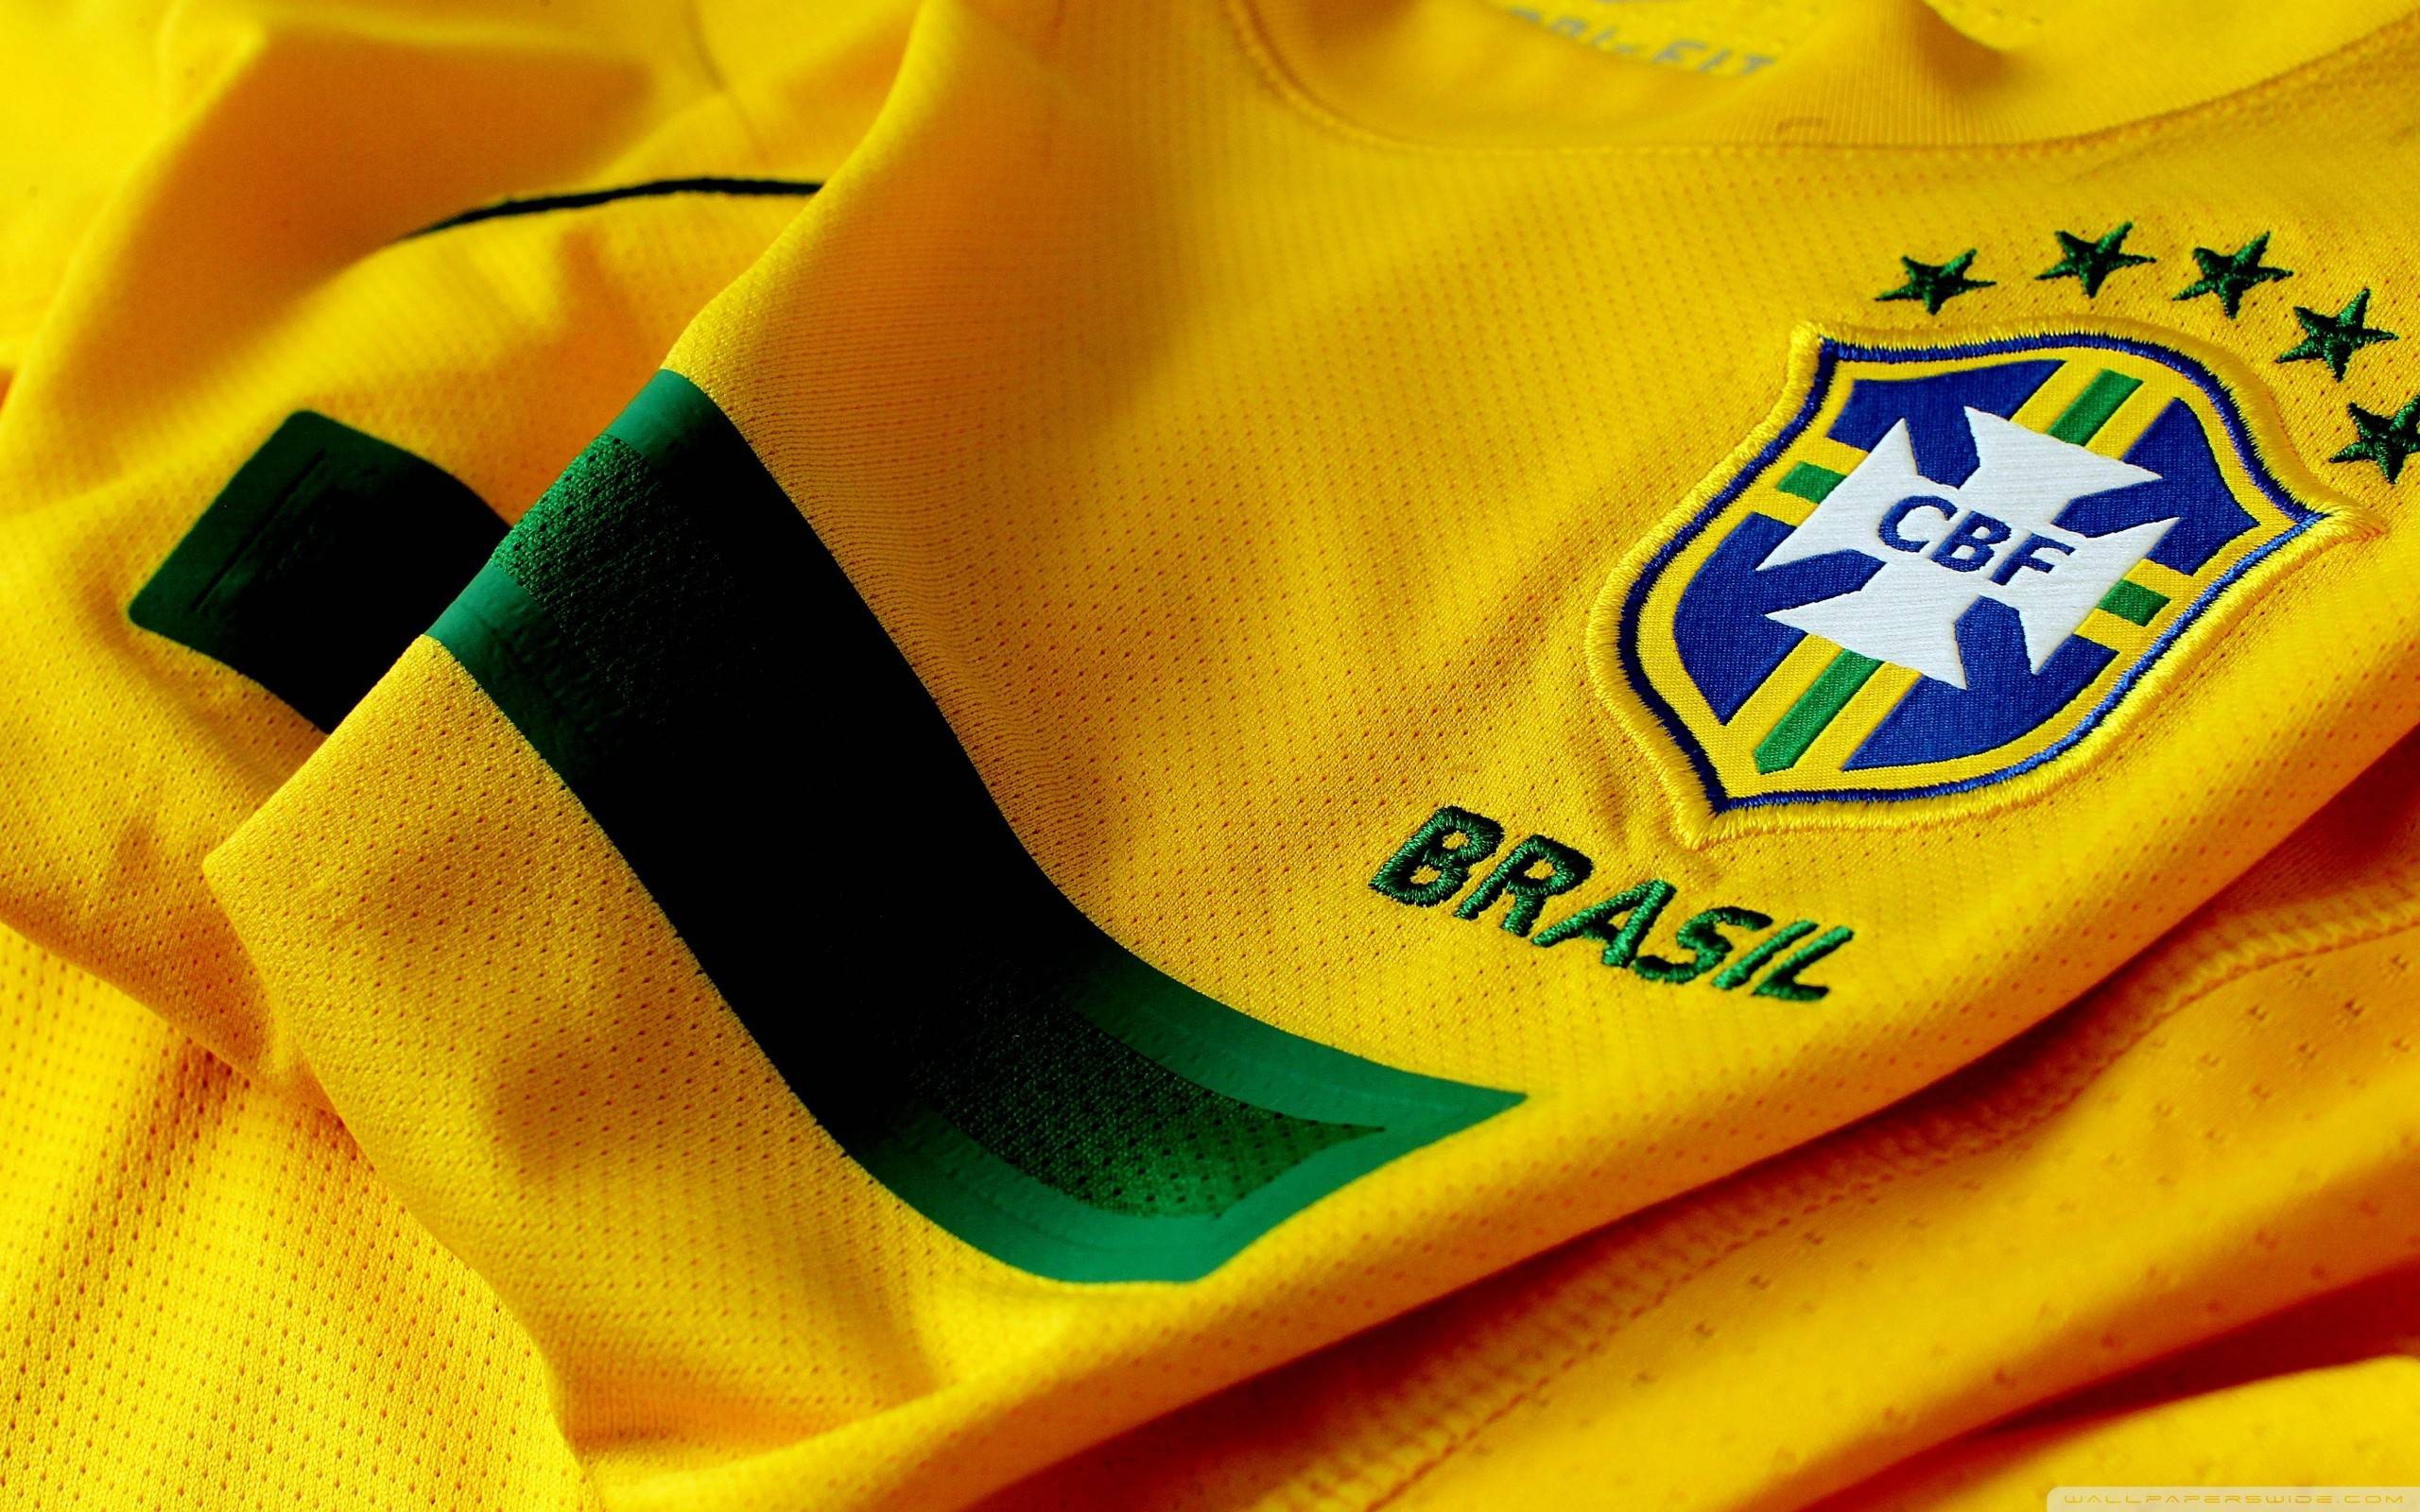 Glöm fotbolls-WM, detta är orsaken till att titta på Brasilien